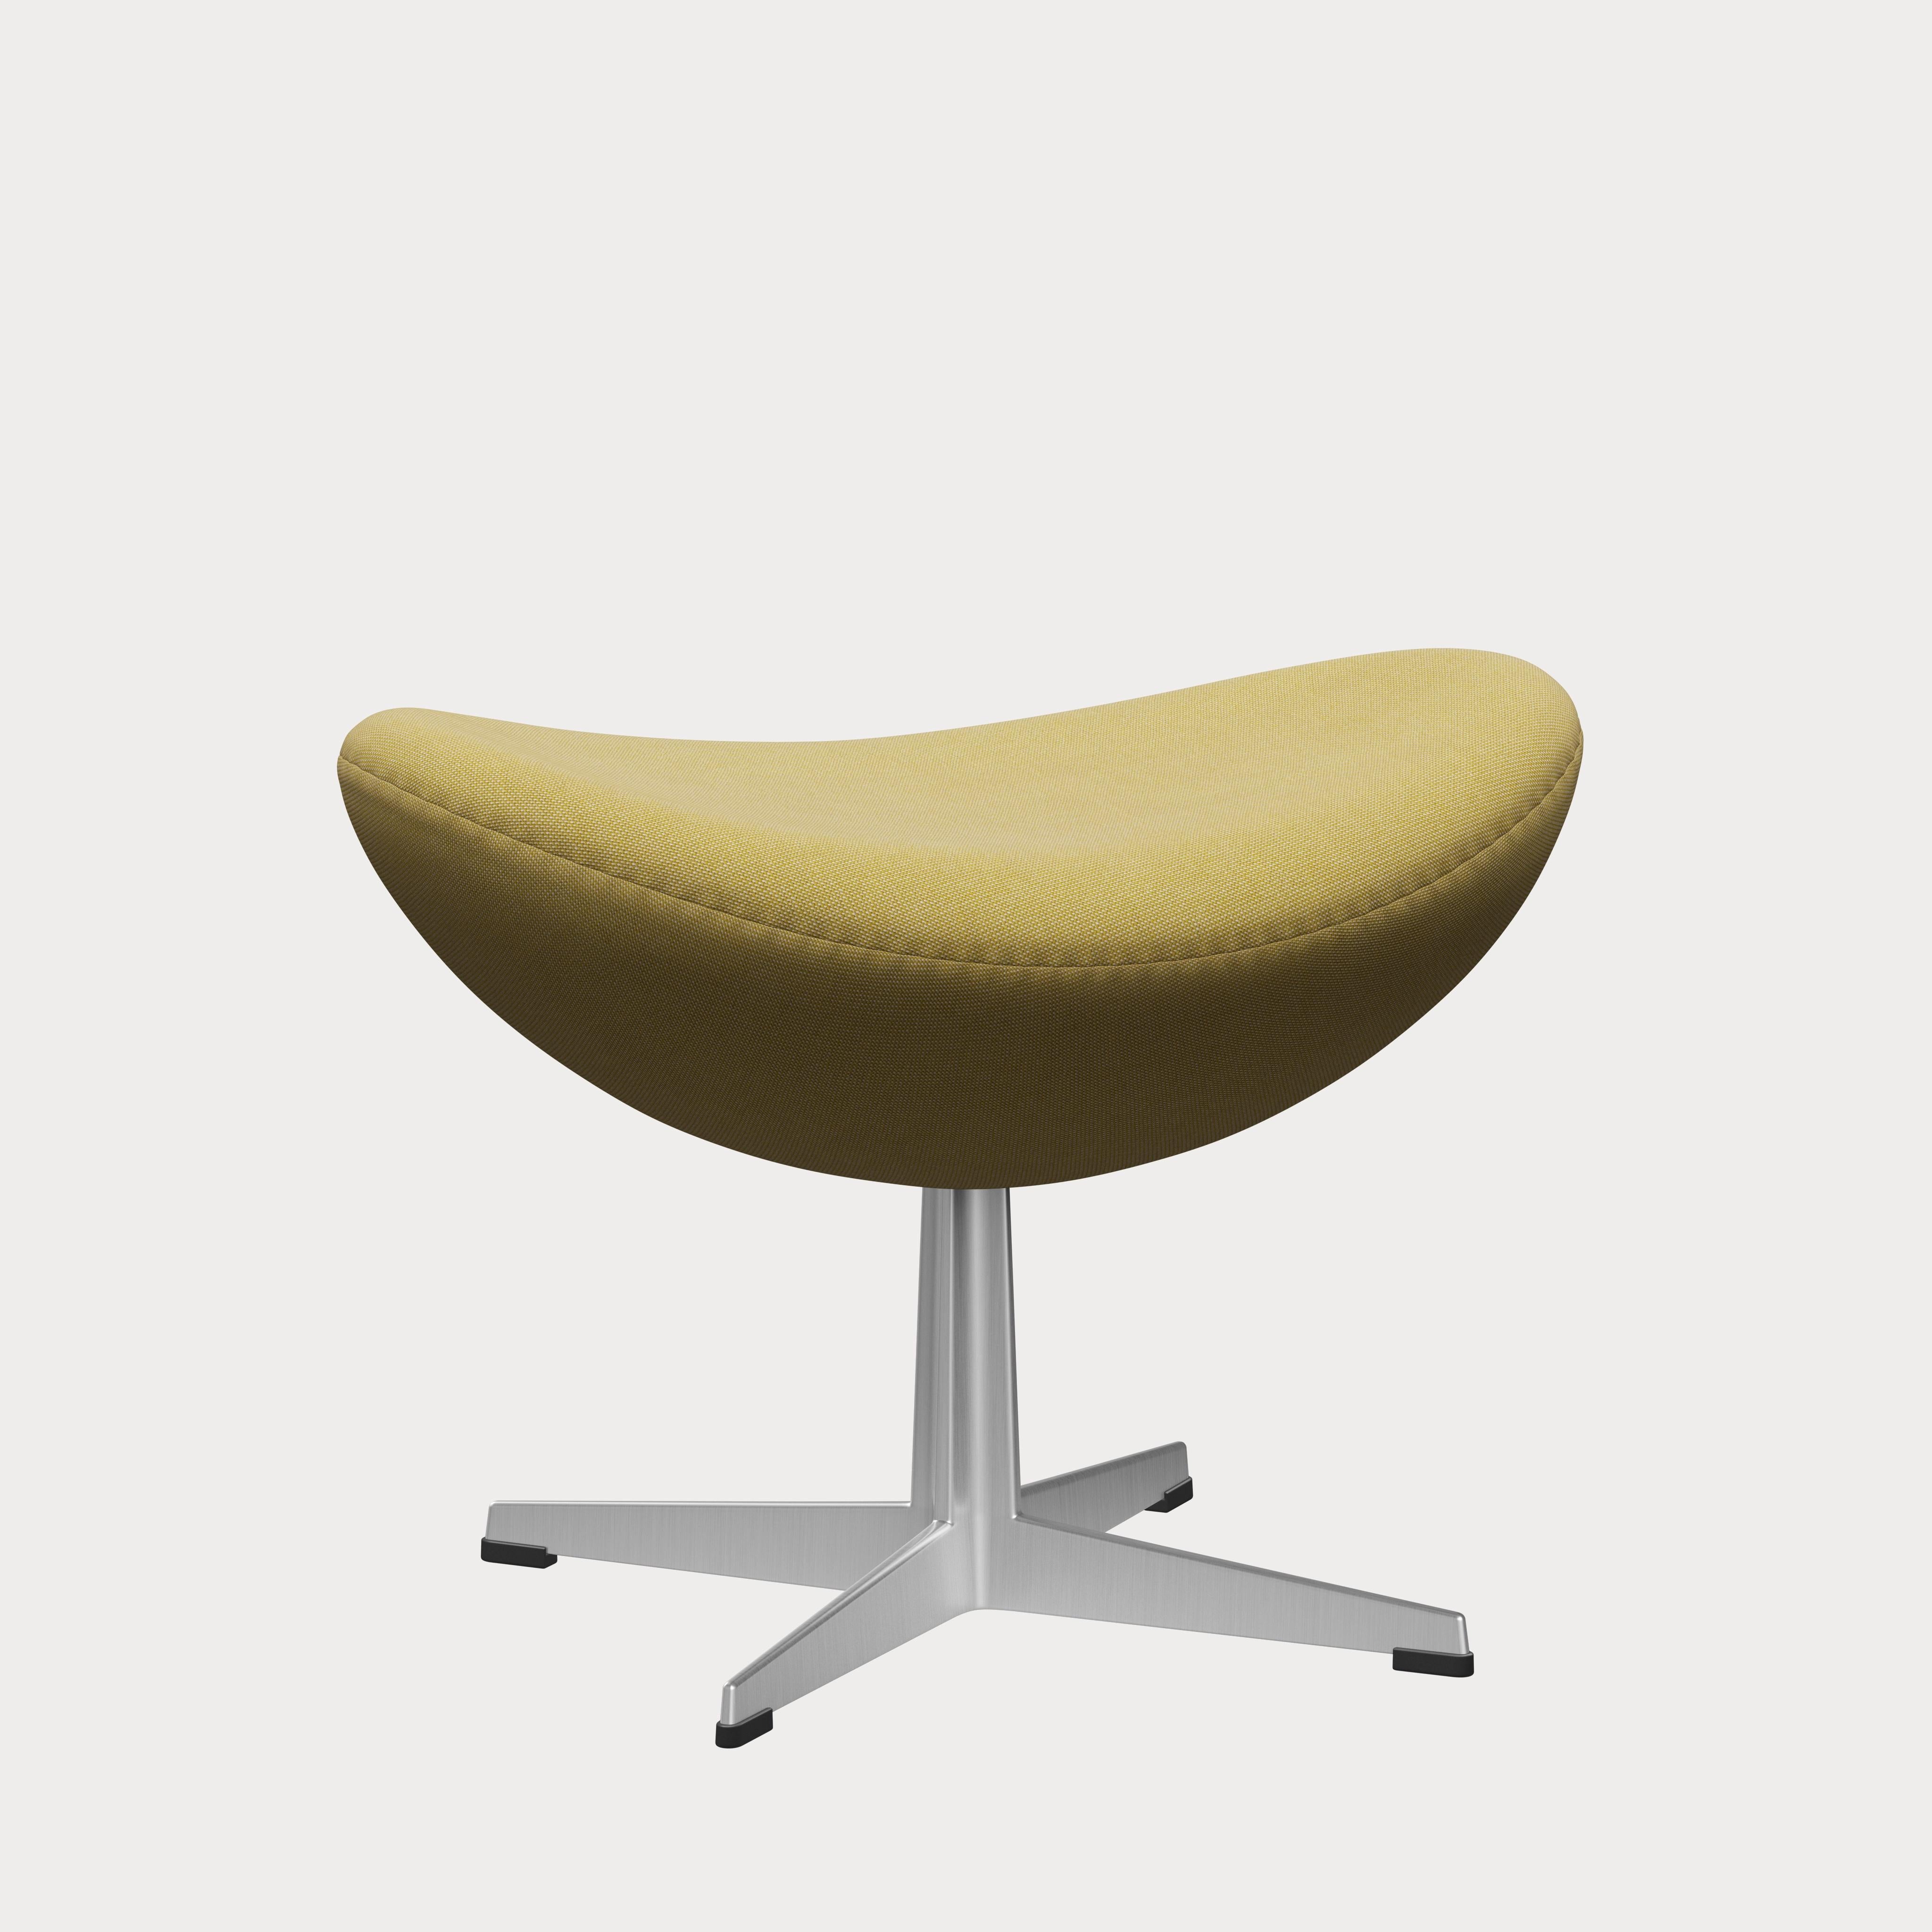 Arne Jacobsen 'Egg' Footstool for Fritz Hansen in Fabric Upholstery (Cat. 1) For Sale 6